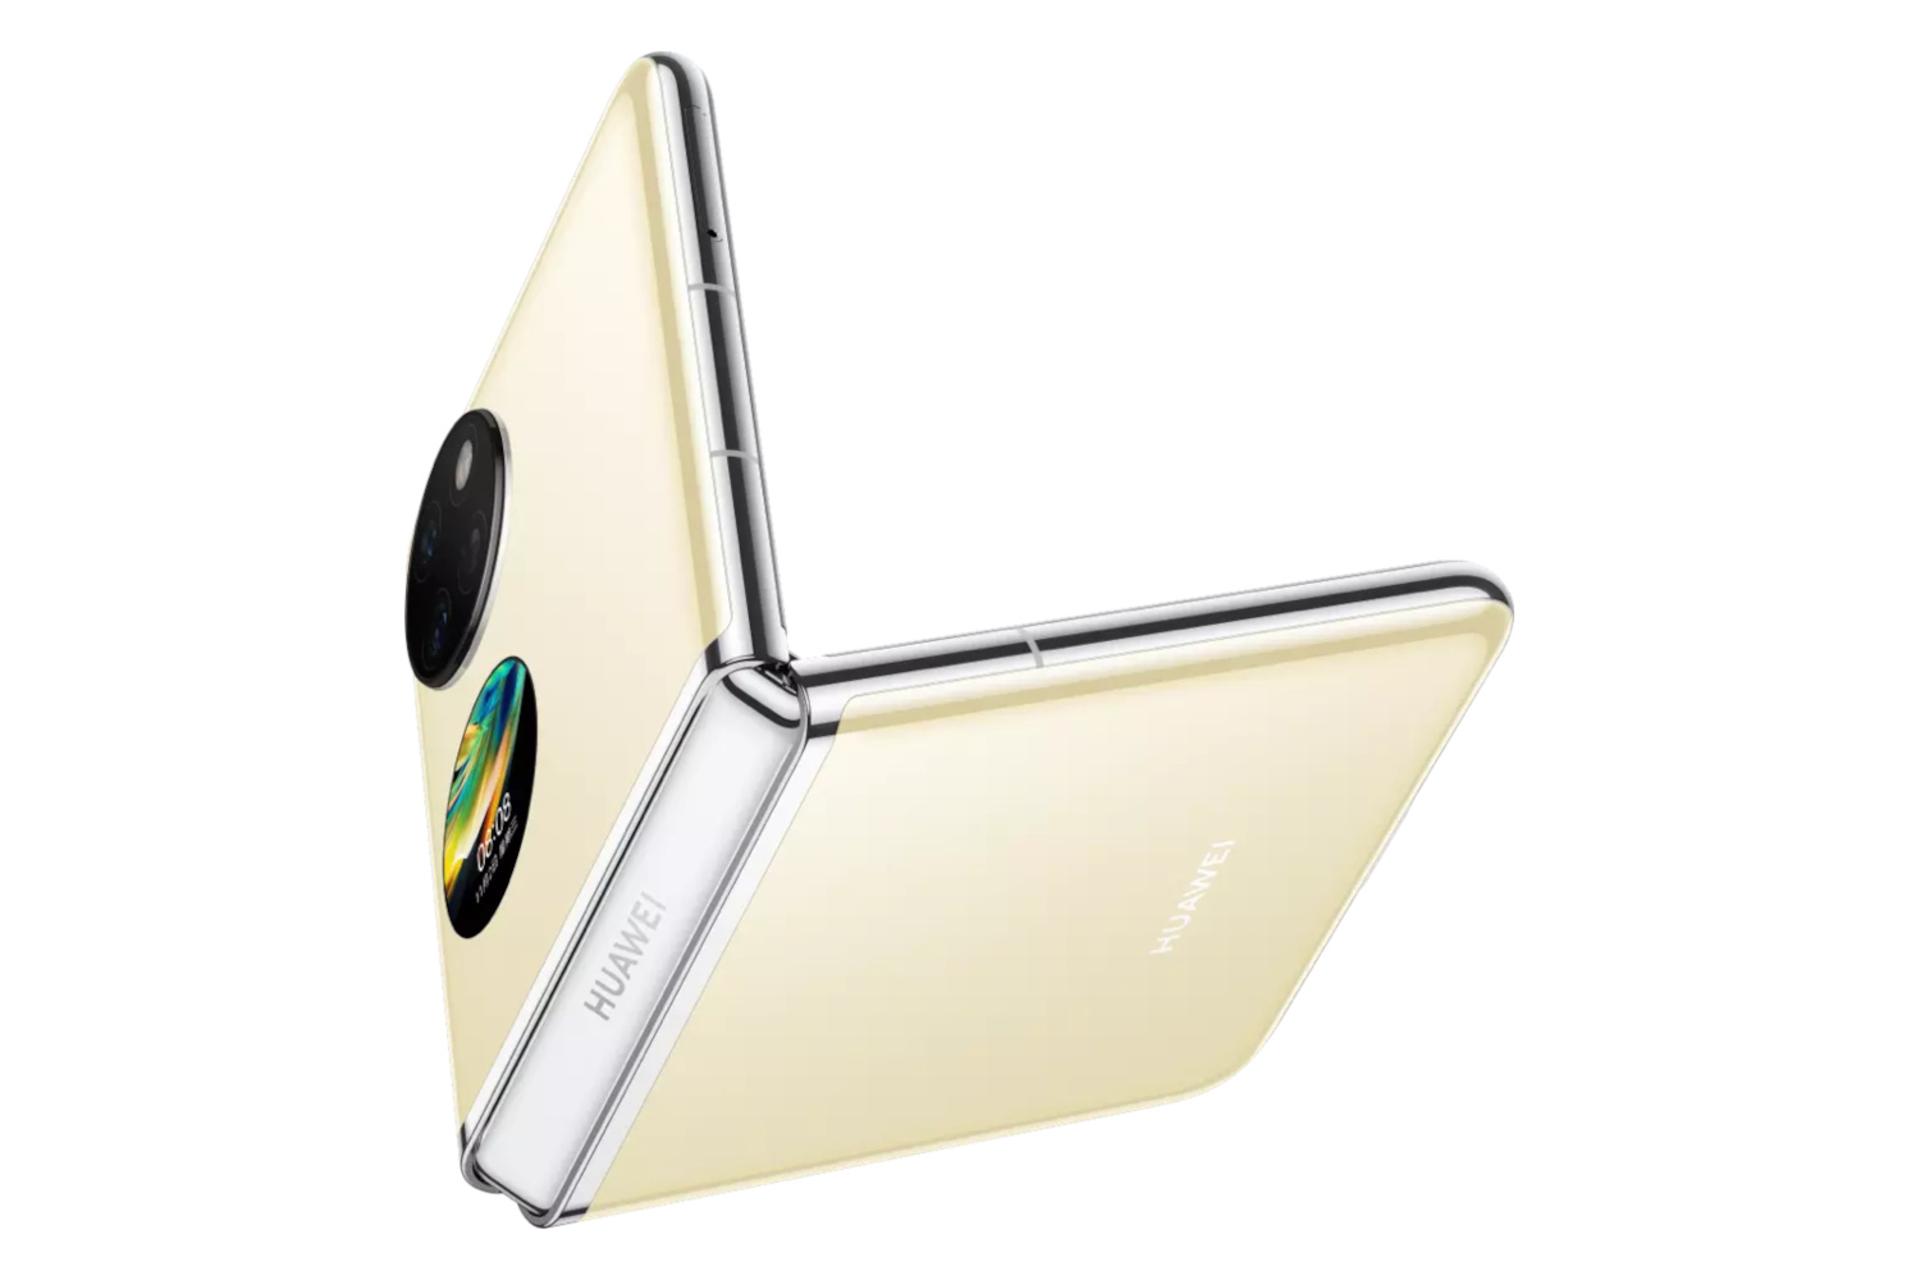 نمای جانبی گوشی موبایل پاکت اس هواوی / Huawei Pocket S طلایی